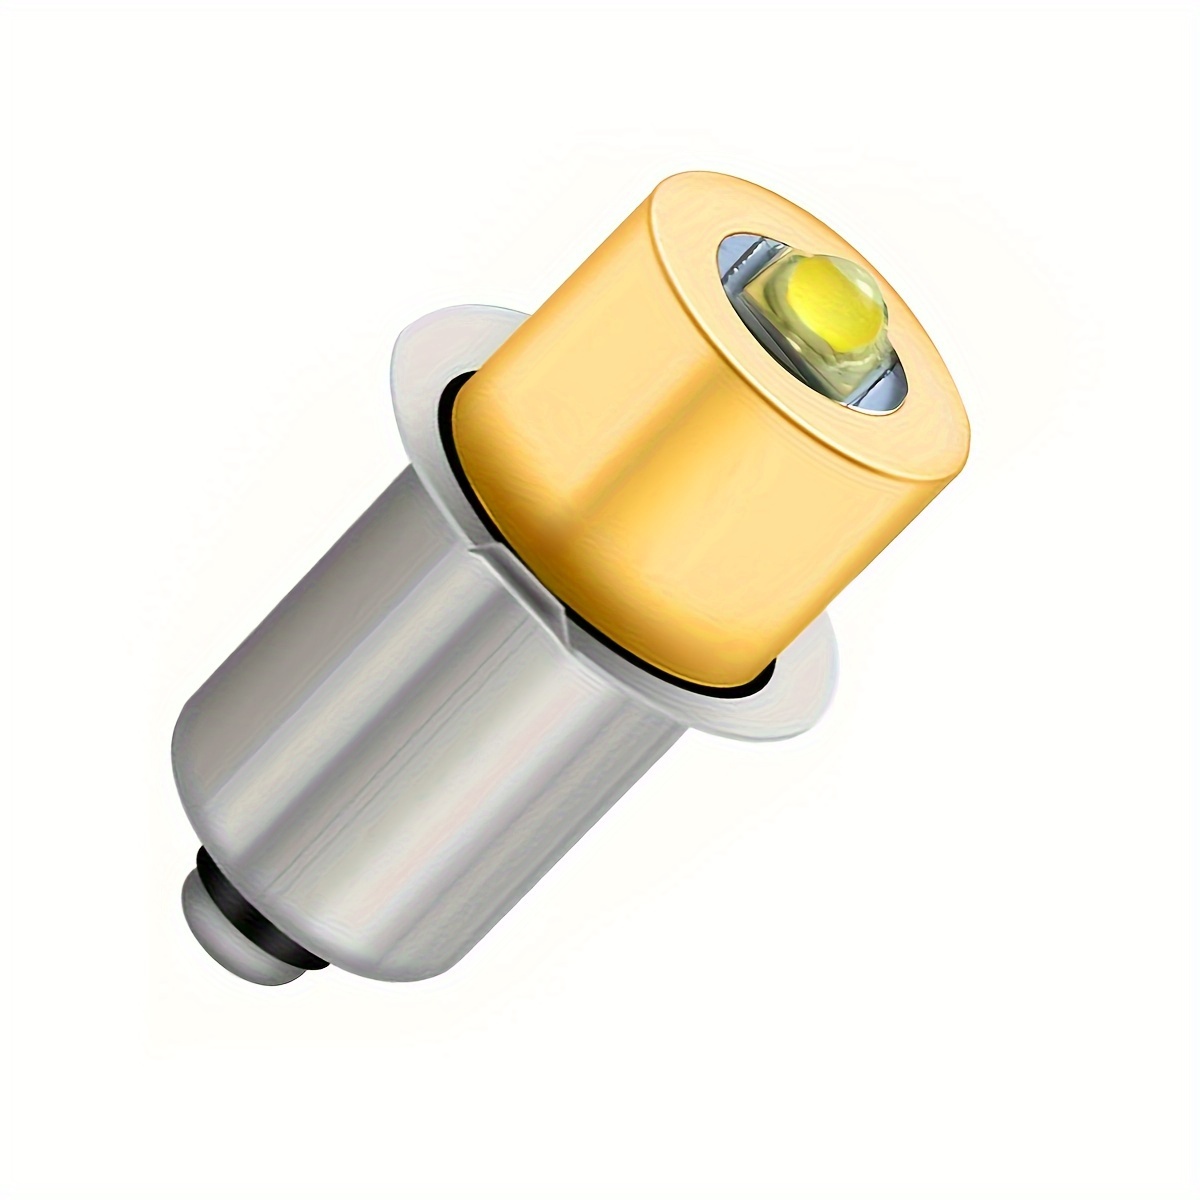 Bombilla recargable USB C con control remoto, 7 W, bombillas E26, control  táctil, bombilla LED regulable con función de temporizador, bombilla de